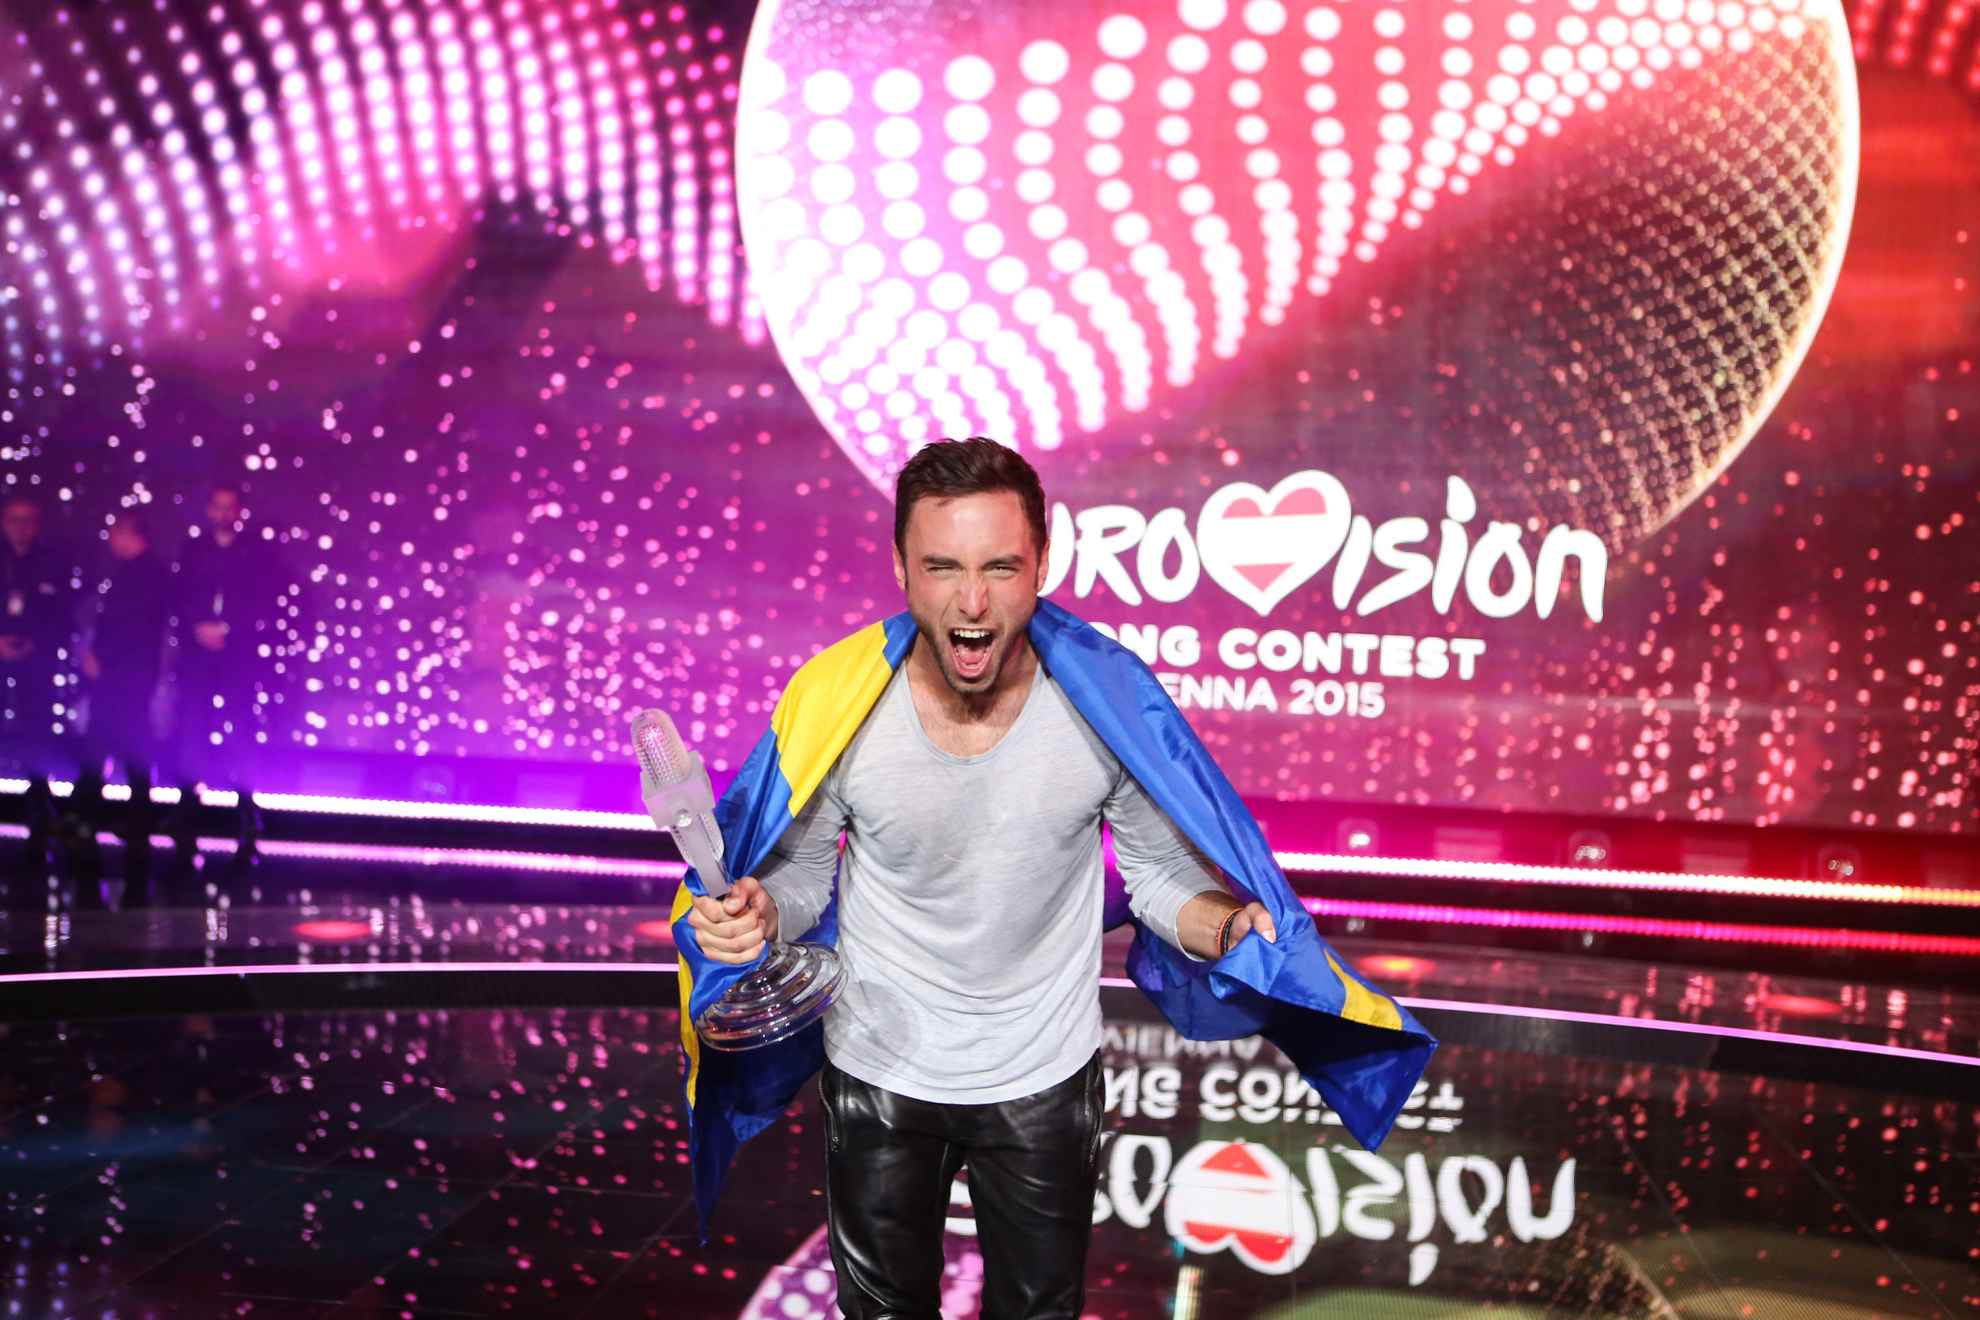 Måns Zelmerlöw au Concours Eurovision de la chanson à Vienne 2015